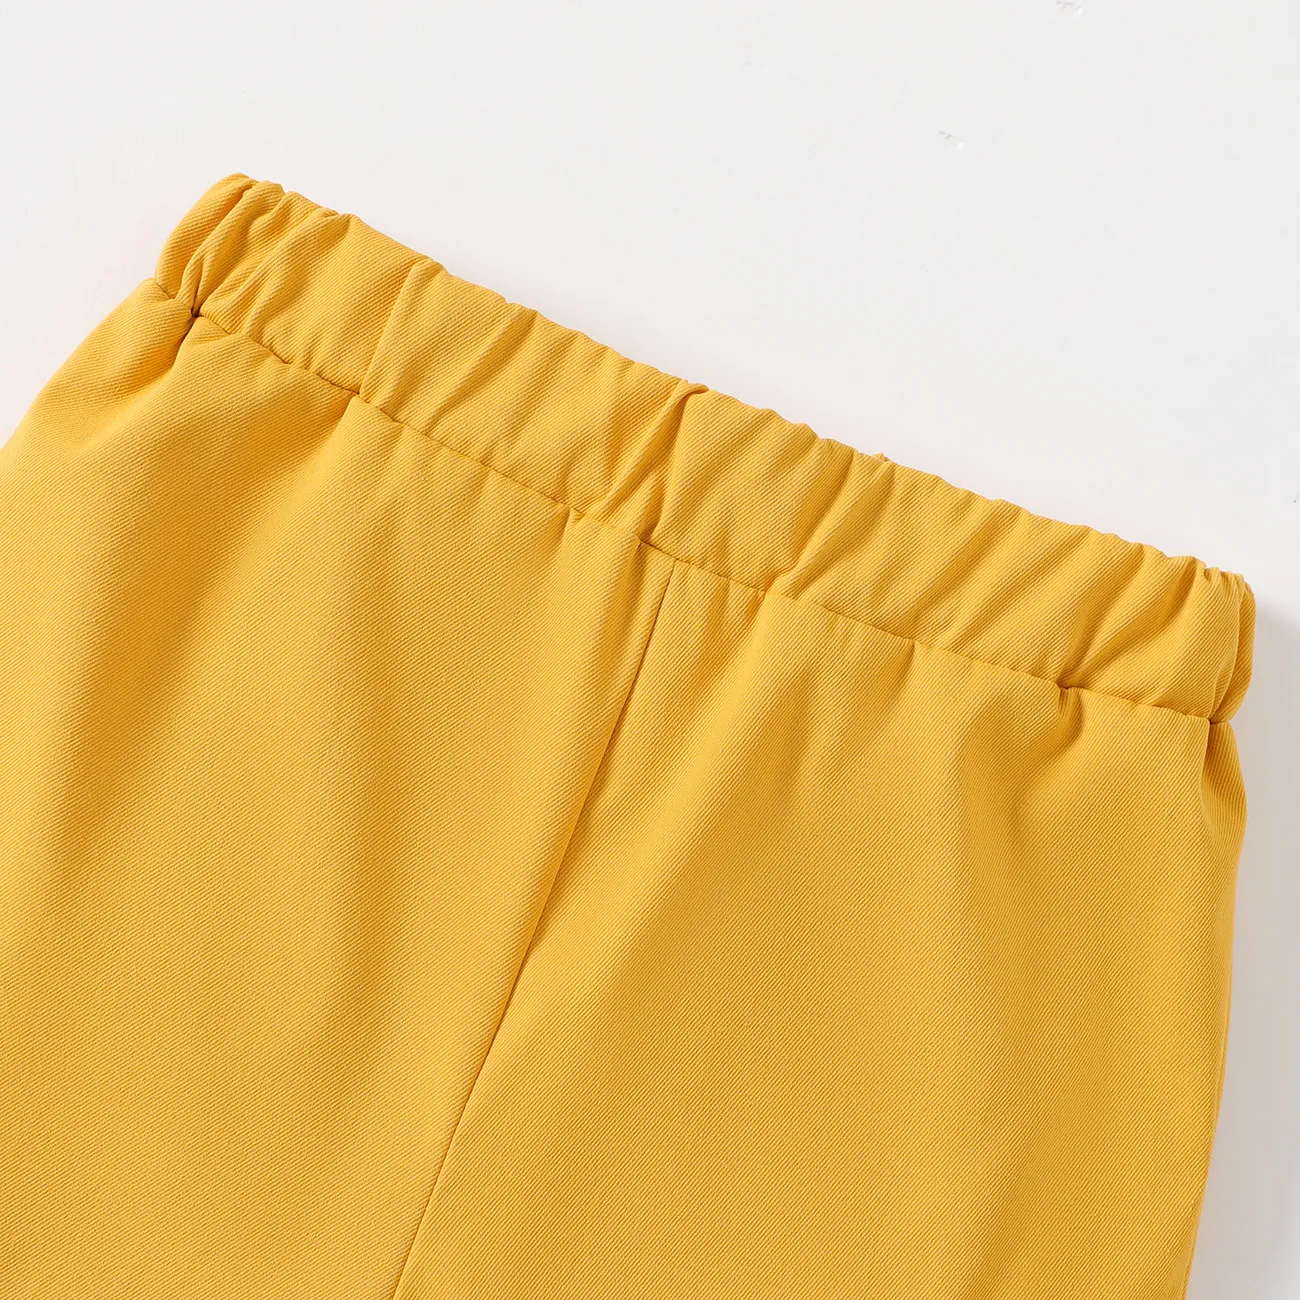 pantalones cortos elásticos con diseño de bolsillo de color sólido para niños Amarillo big image 1